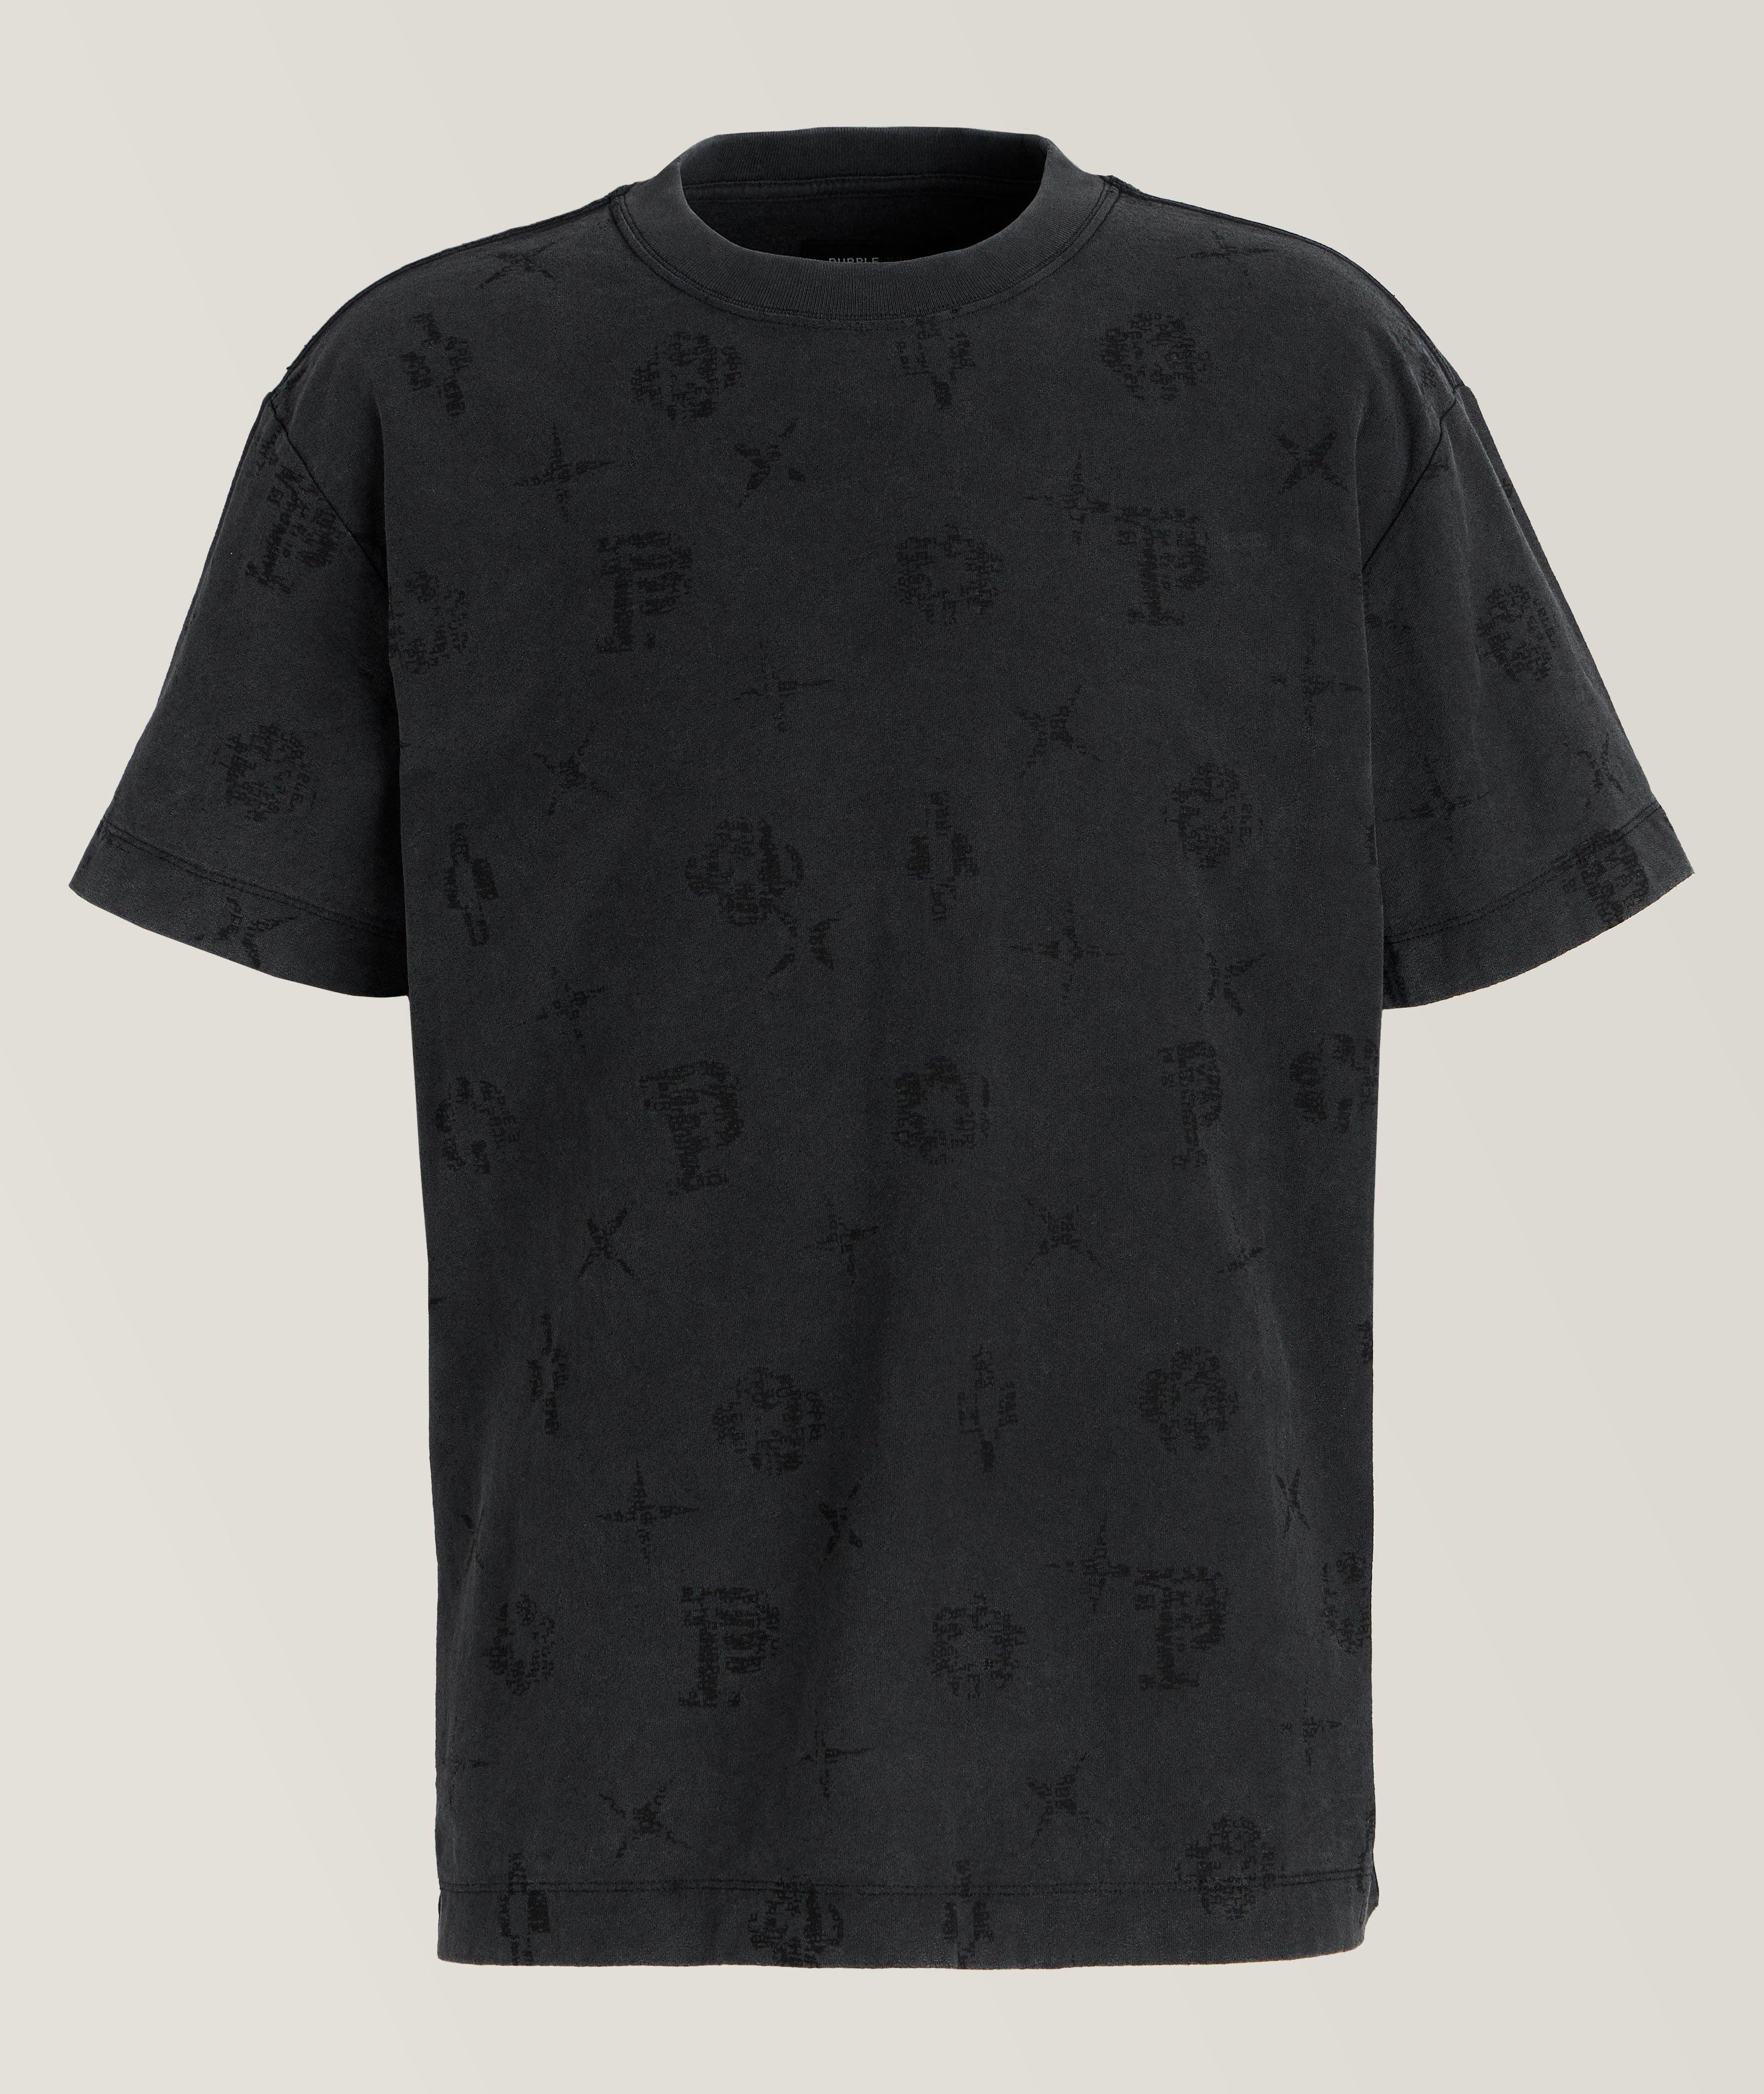 T-shirt P104 en coton à motif de logos image 0